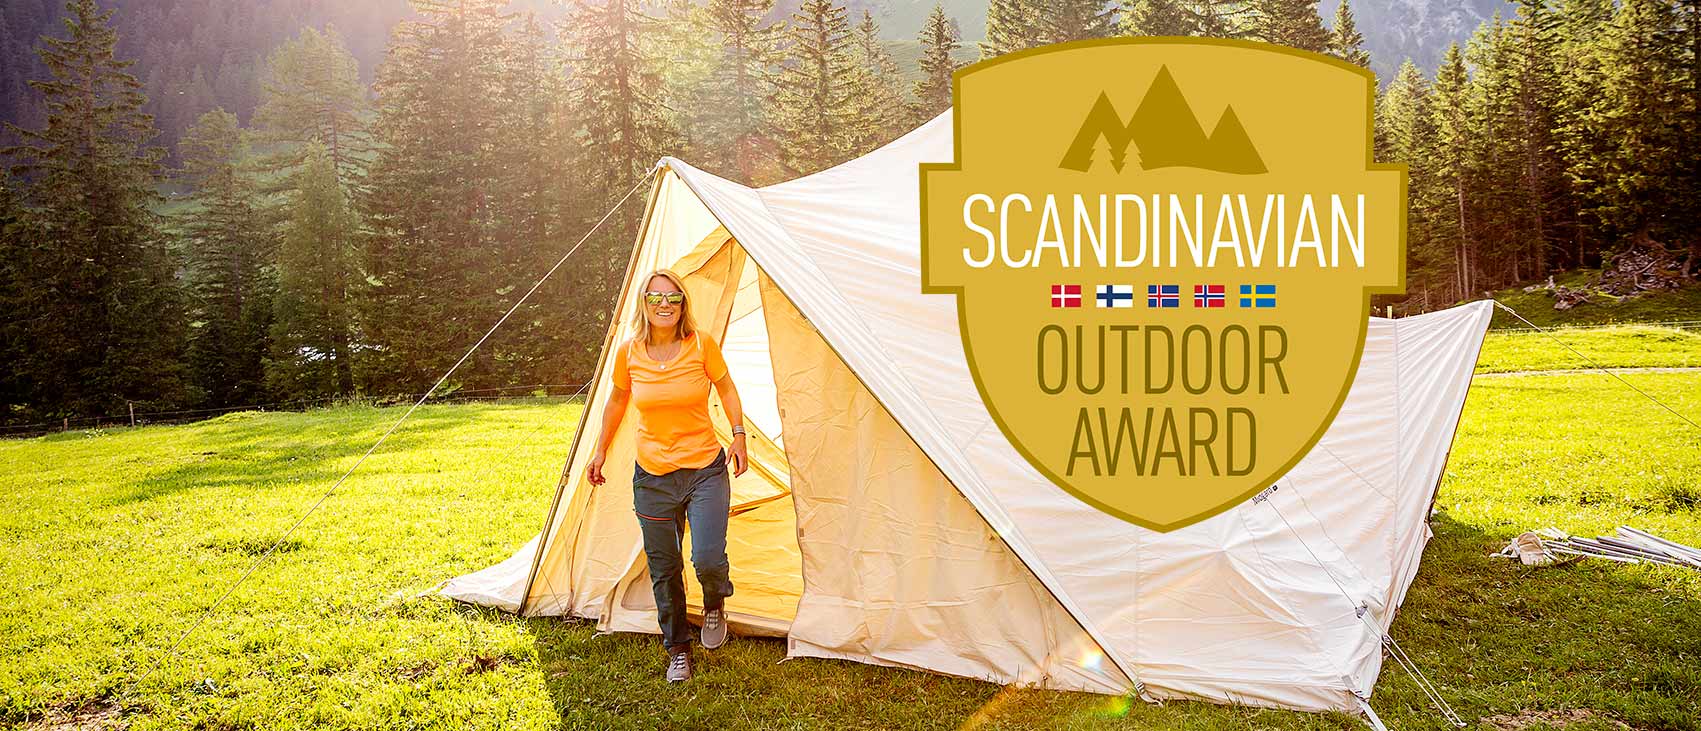 Scandinavian Outdoor Award | Outdoor 2019